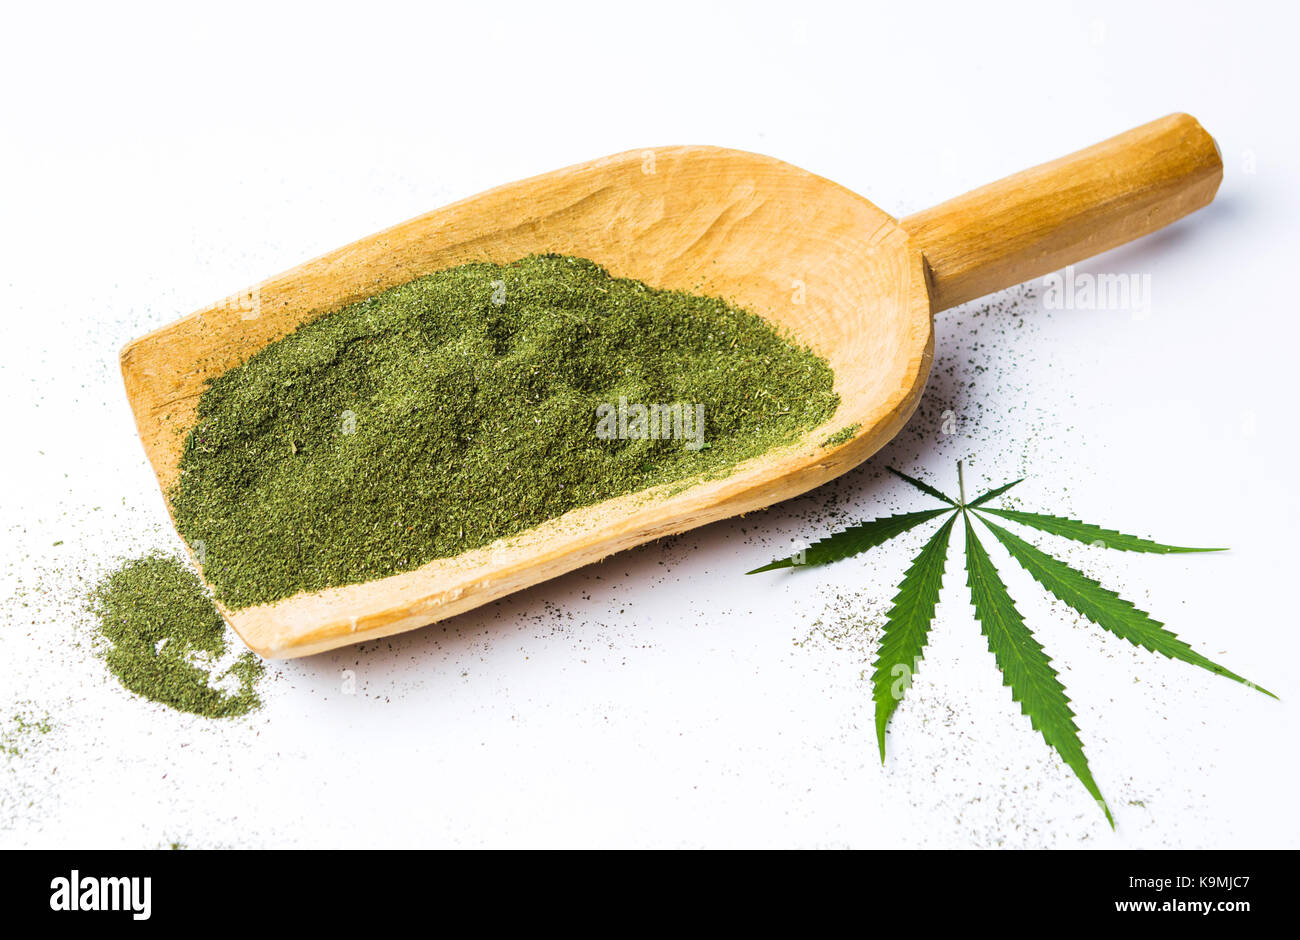 La poudre de marijuana dans une grande cuillère en bois Photo Stock - Alamy